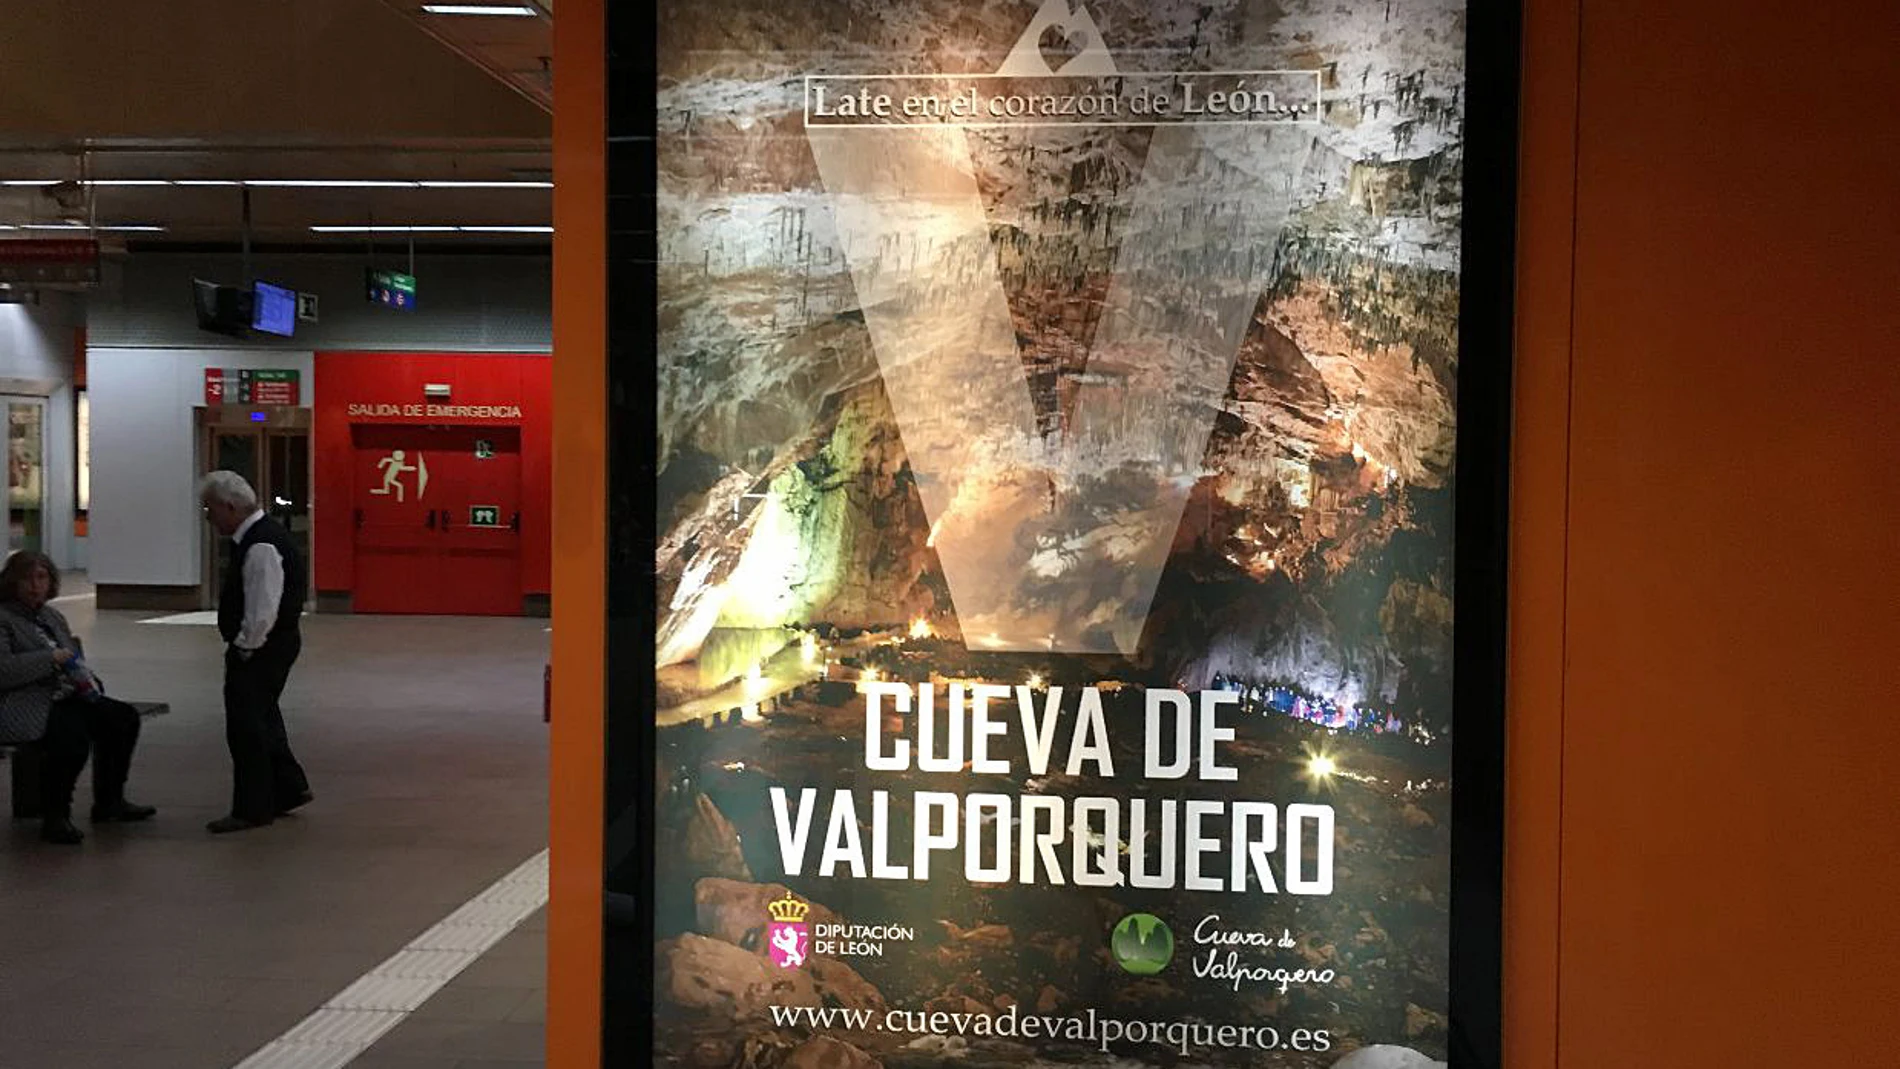 La Diputación de León promociona la Cueva de Valporquero en quioscos e intercambiadores de Madrid